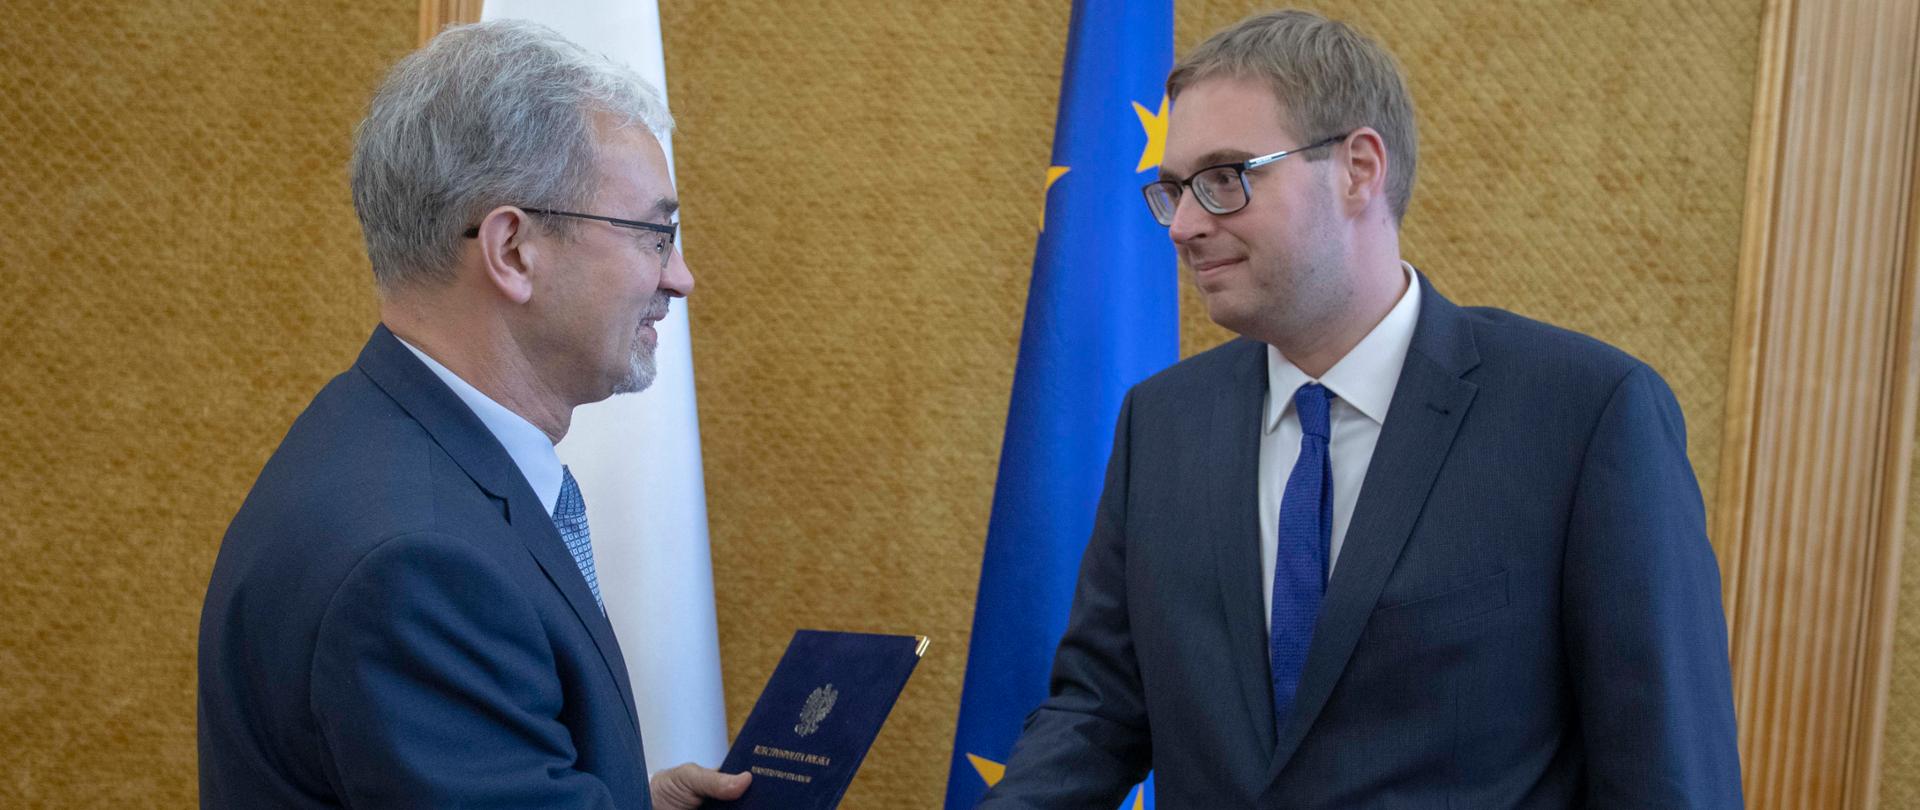 Minister Jerzy Kwieciński gratuluje Janowi Sarnowskiemu